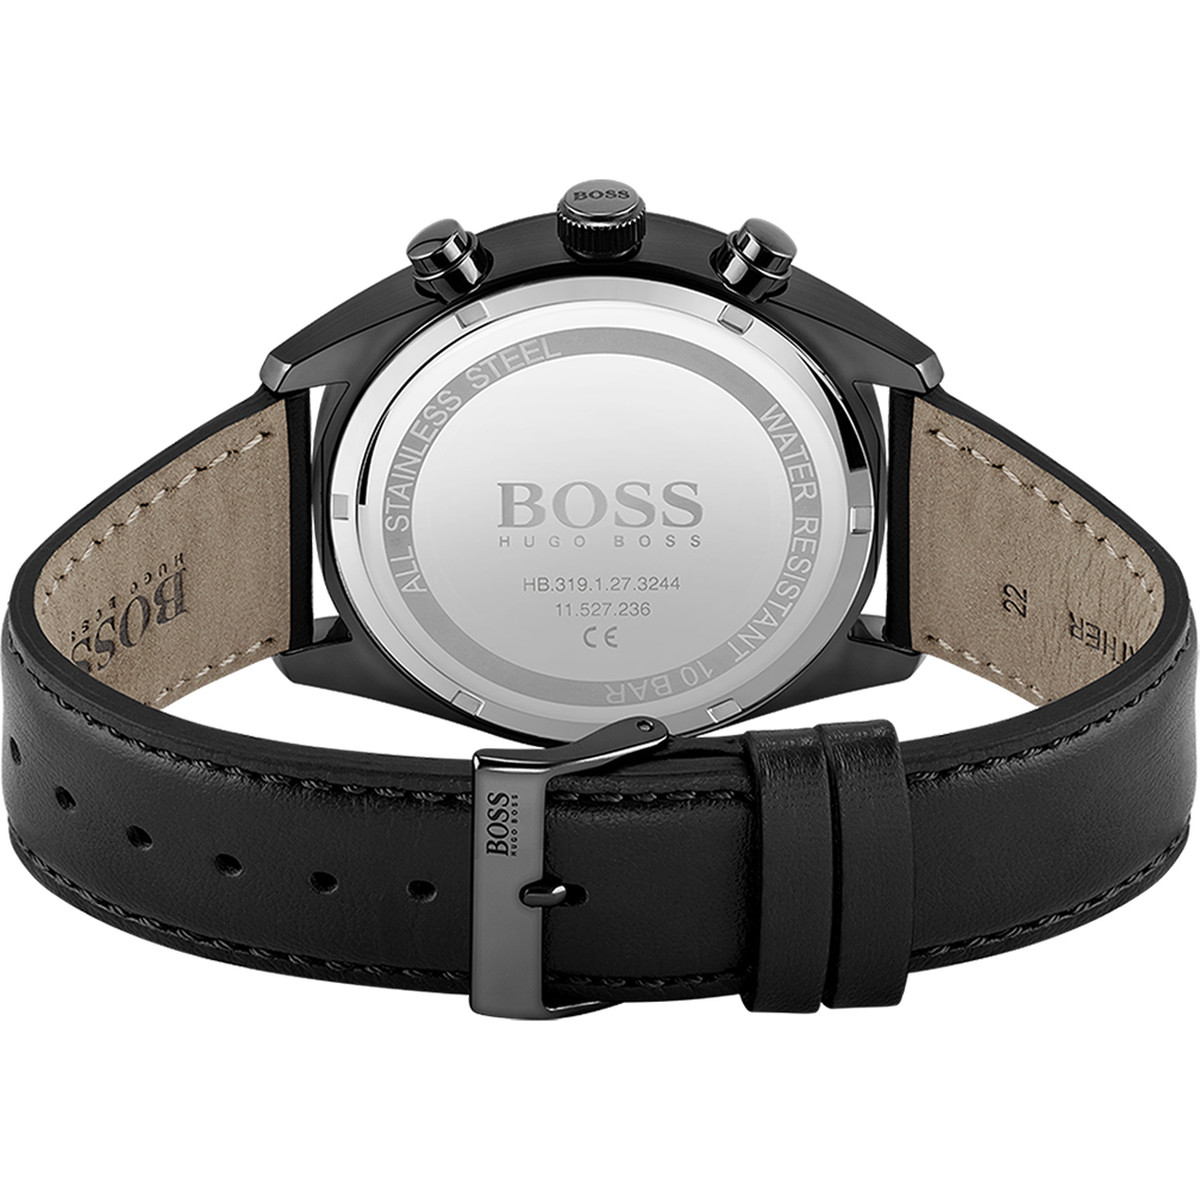 Montre Boss homme acier bracelet cuir noir - vue 3